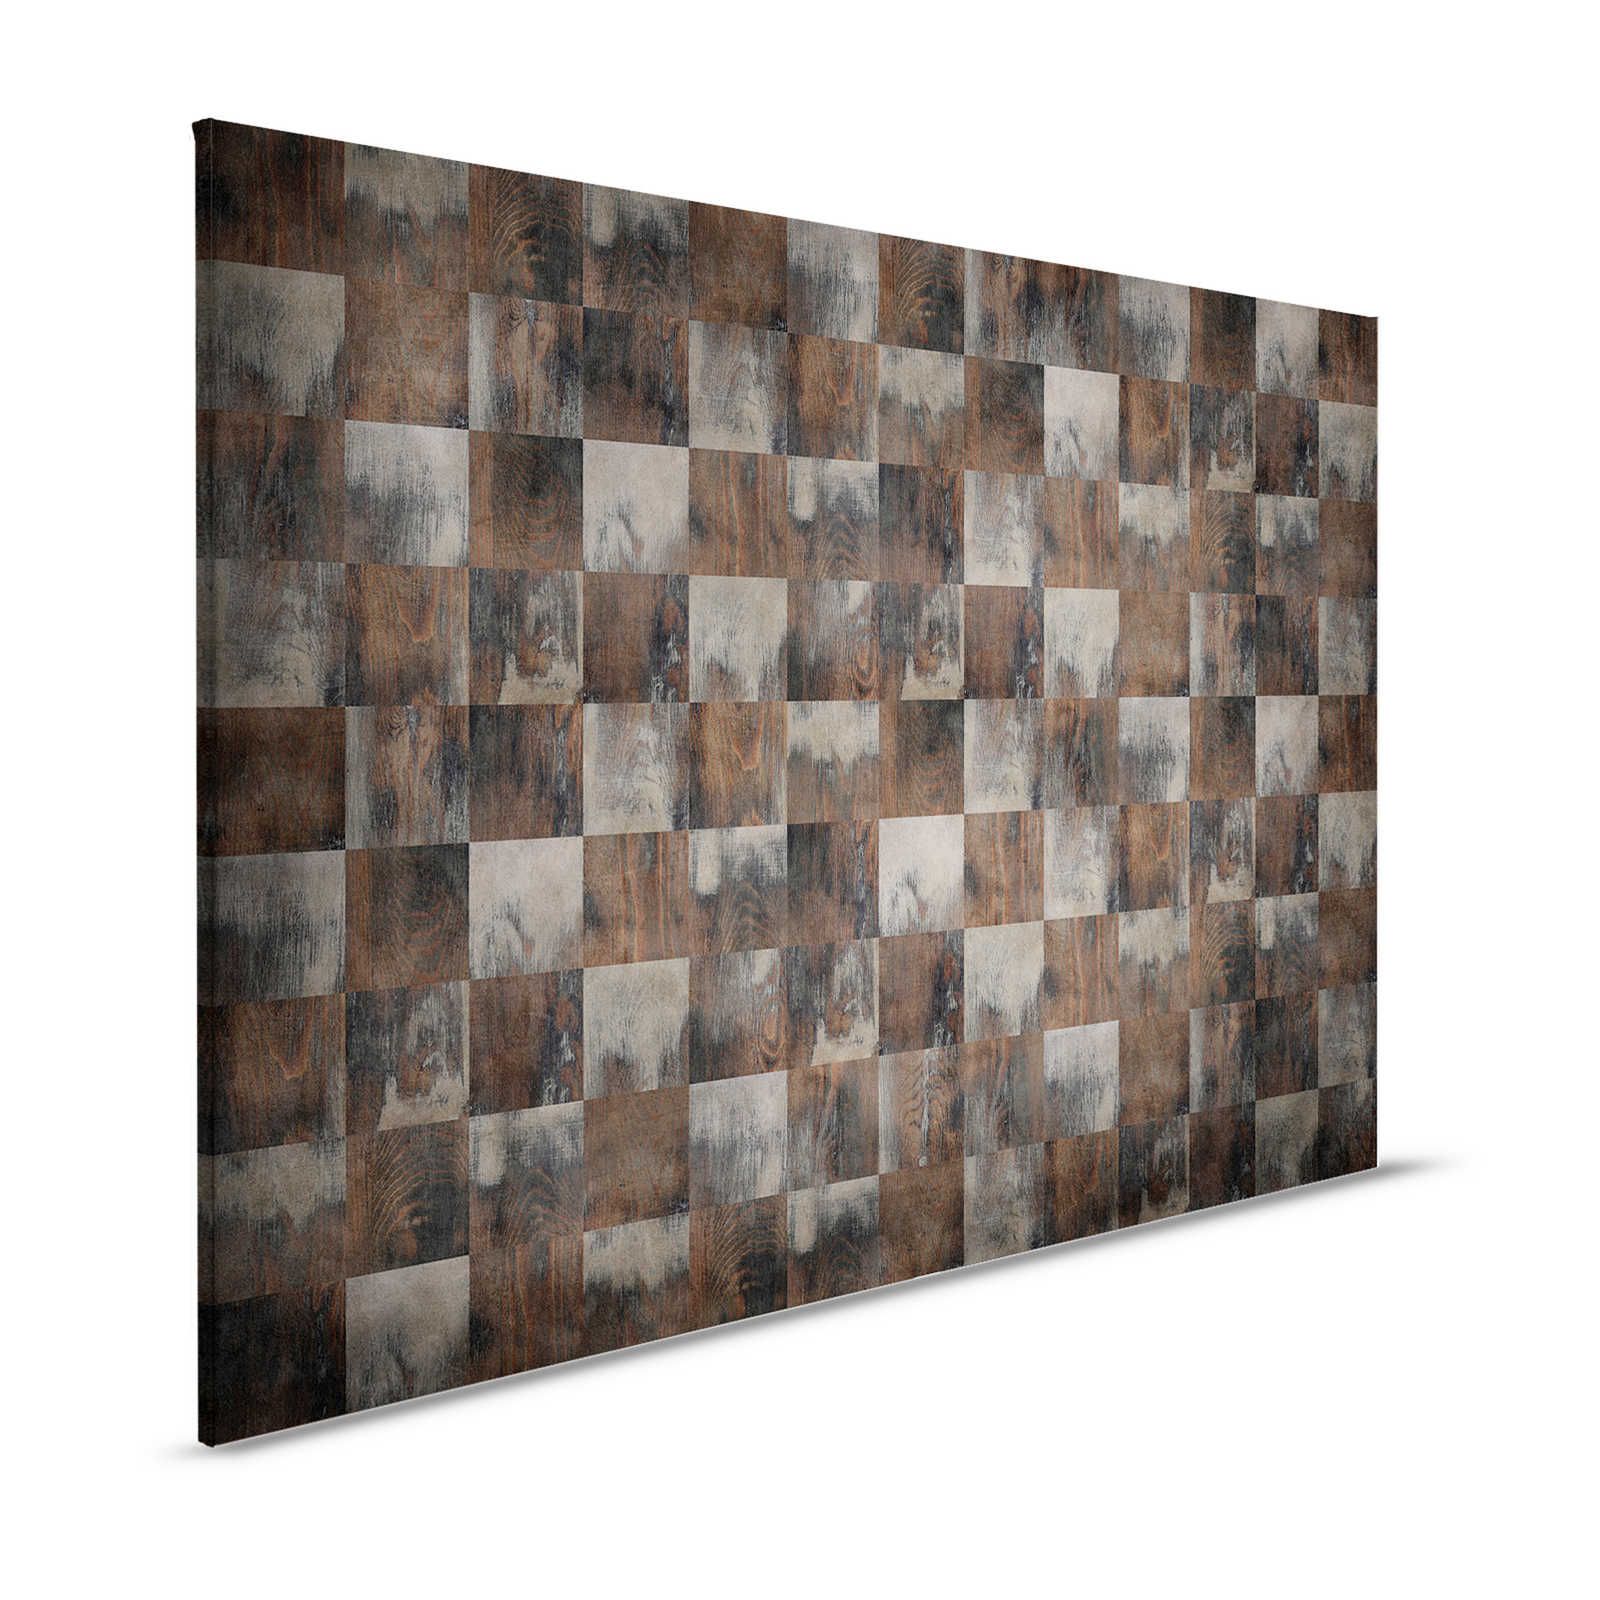 Fabriek 2 - canvasplaat in houtlook Ruitpatroon in used look - 1,20 m x 0,80 m
